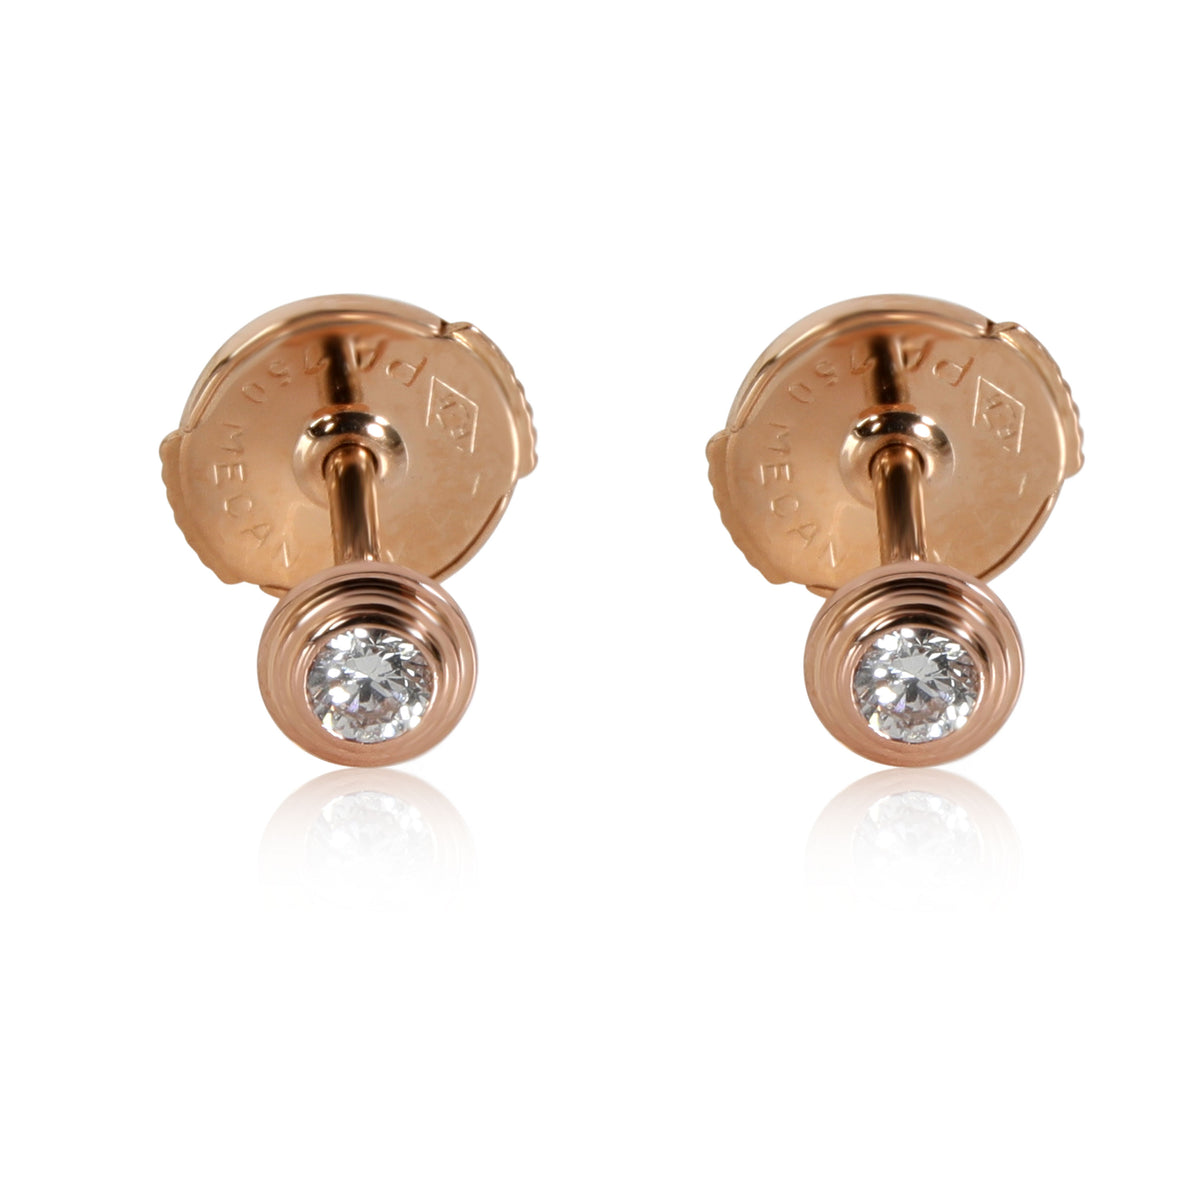 Cartier Diamants Legers Stud Diamond Earrings in 18k Rose Gold 0.08 CTW